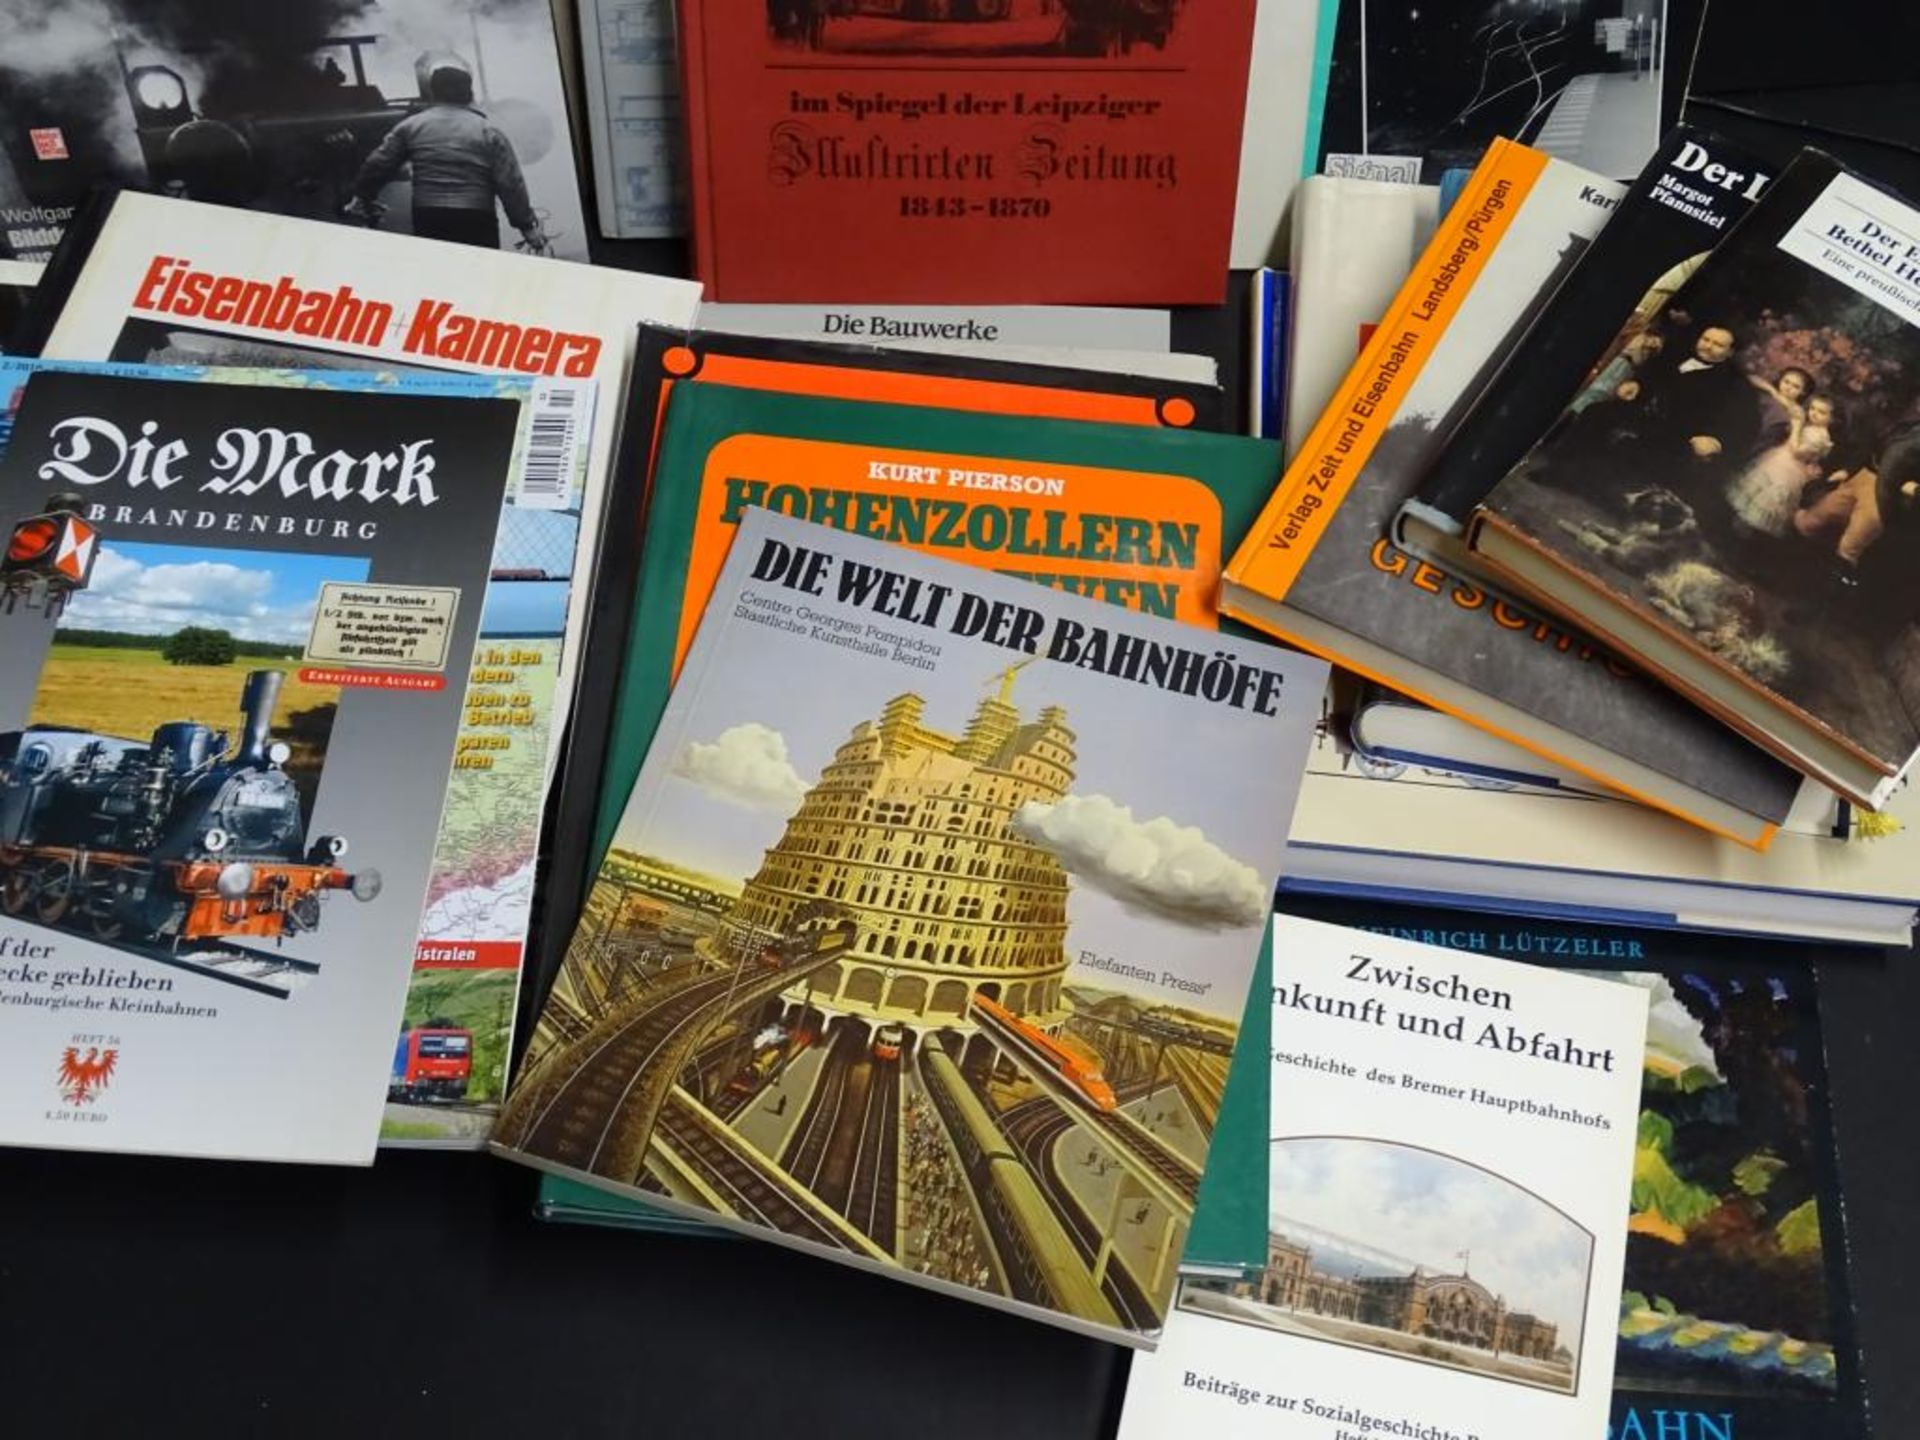 Karton voller Eisenbahn Bücher,ca. 26 Stü- - -22.61 % buyer's premium on the hammer priceVAT - Bild 3 aus 3